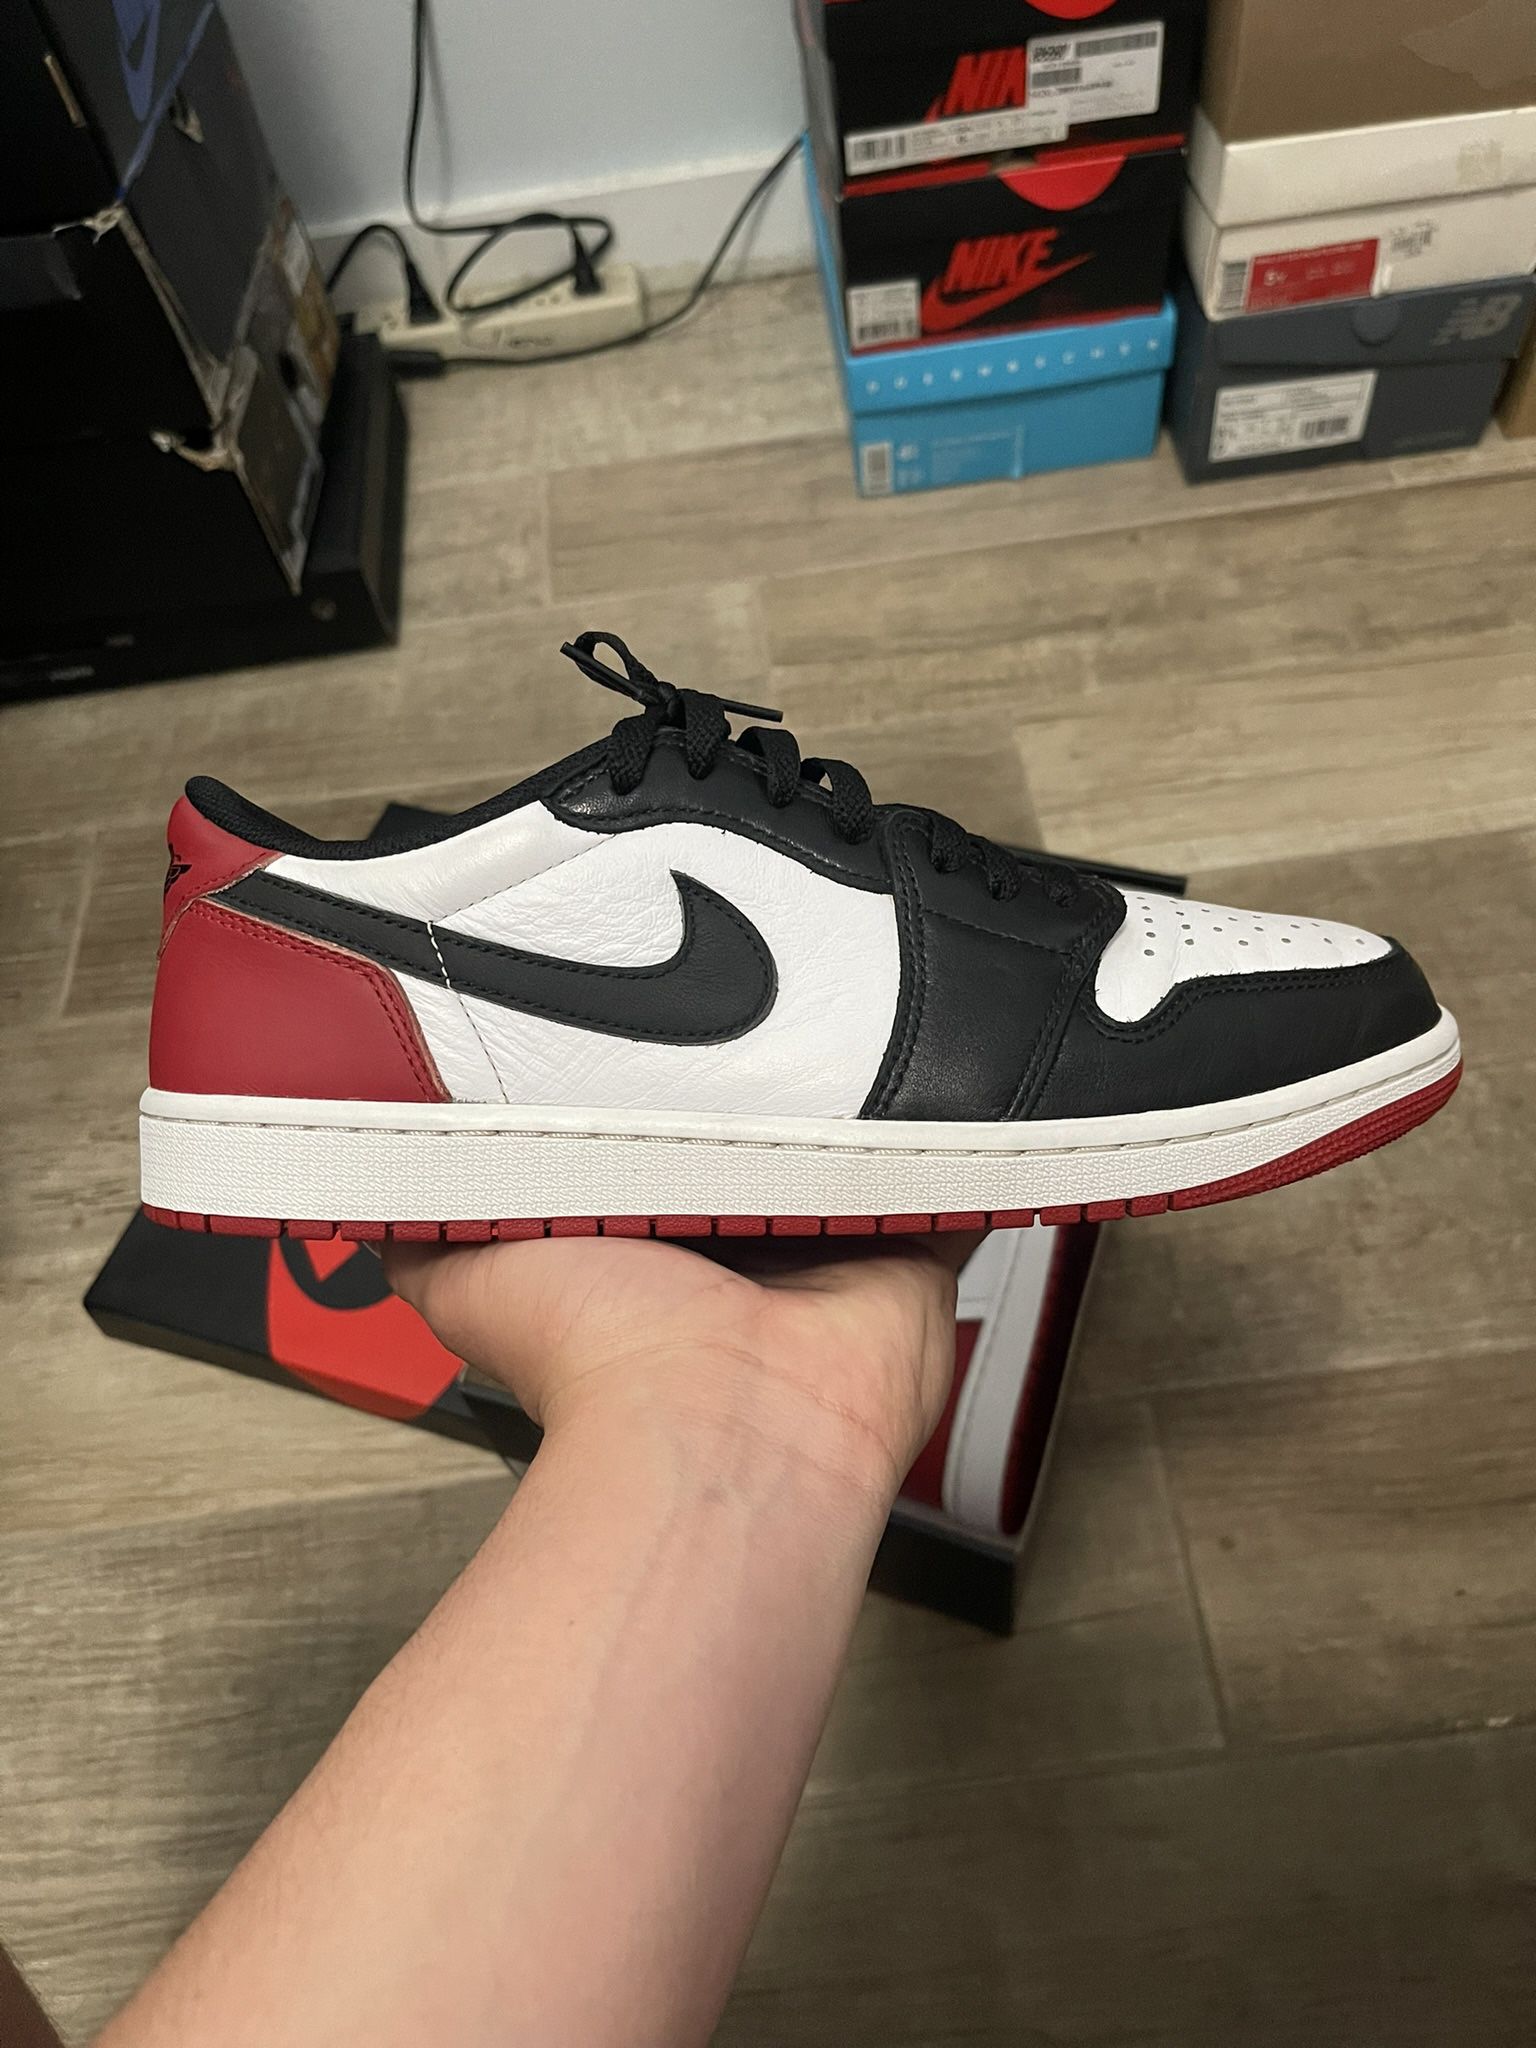 Air Jordan 1 Low “Black Toe” Size 10.5